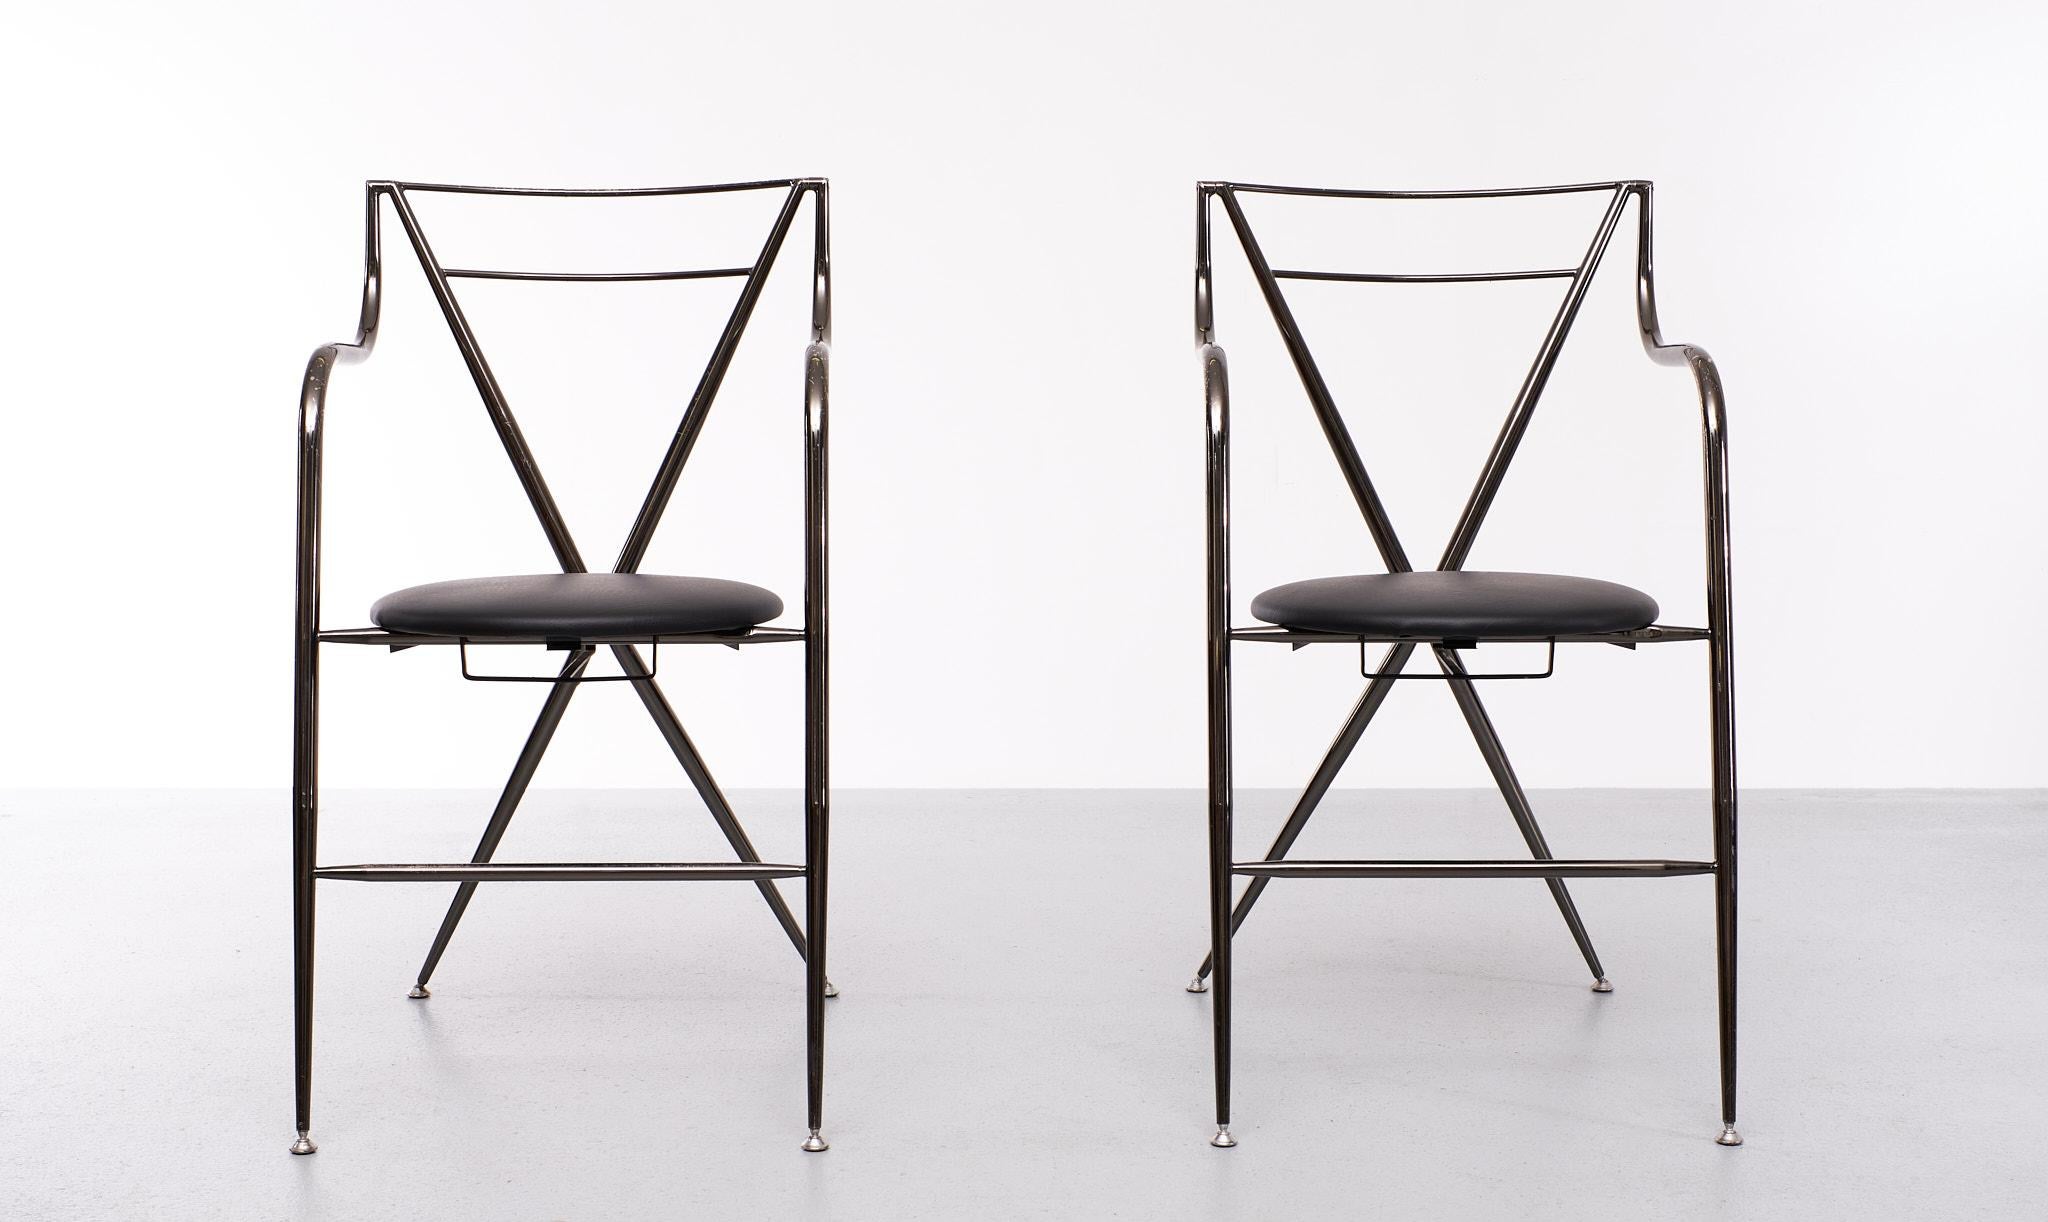 Ein Paar Hiroyuki Yamakado Cinderella Klapphocker für Arredi mit neuen Kunstledersitzen. Sie sind aus schwarz geätztem Stahlrohr gefertigt und mit drehbaren und rutschfesten Füßen ausgestattet. Diese Stühle sind in gutem gebrauchten Zustand